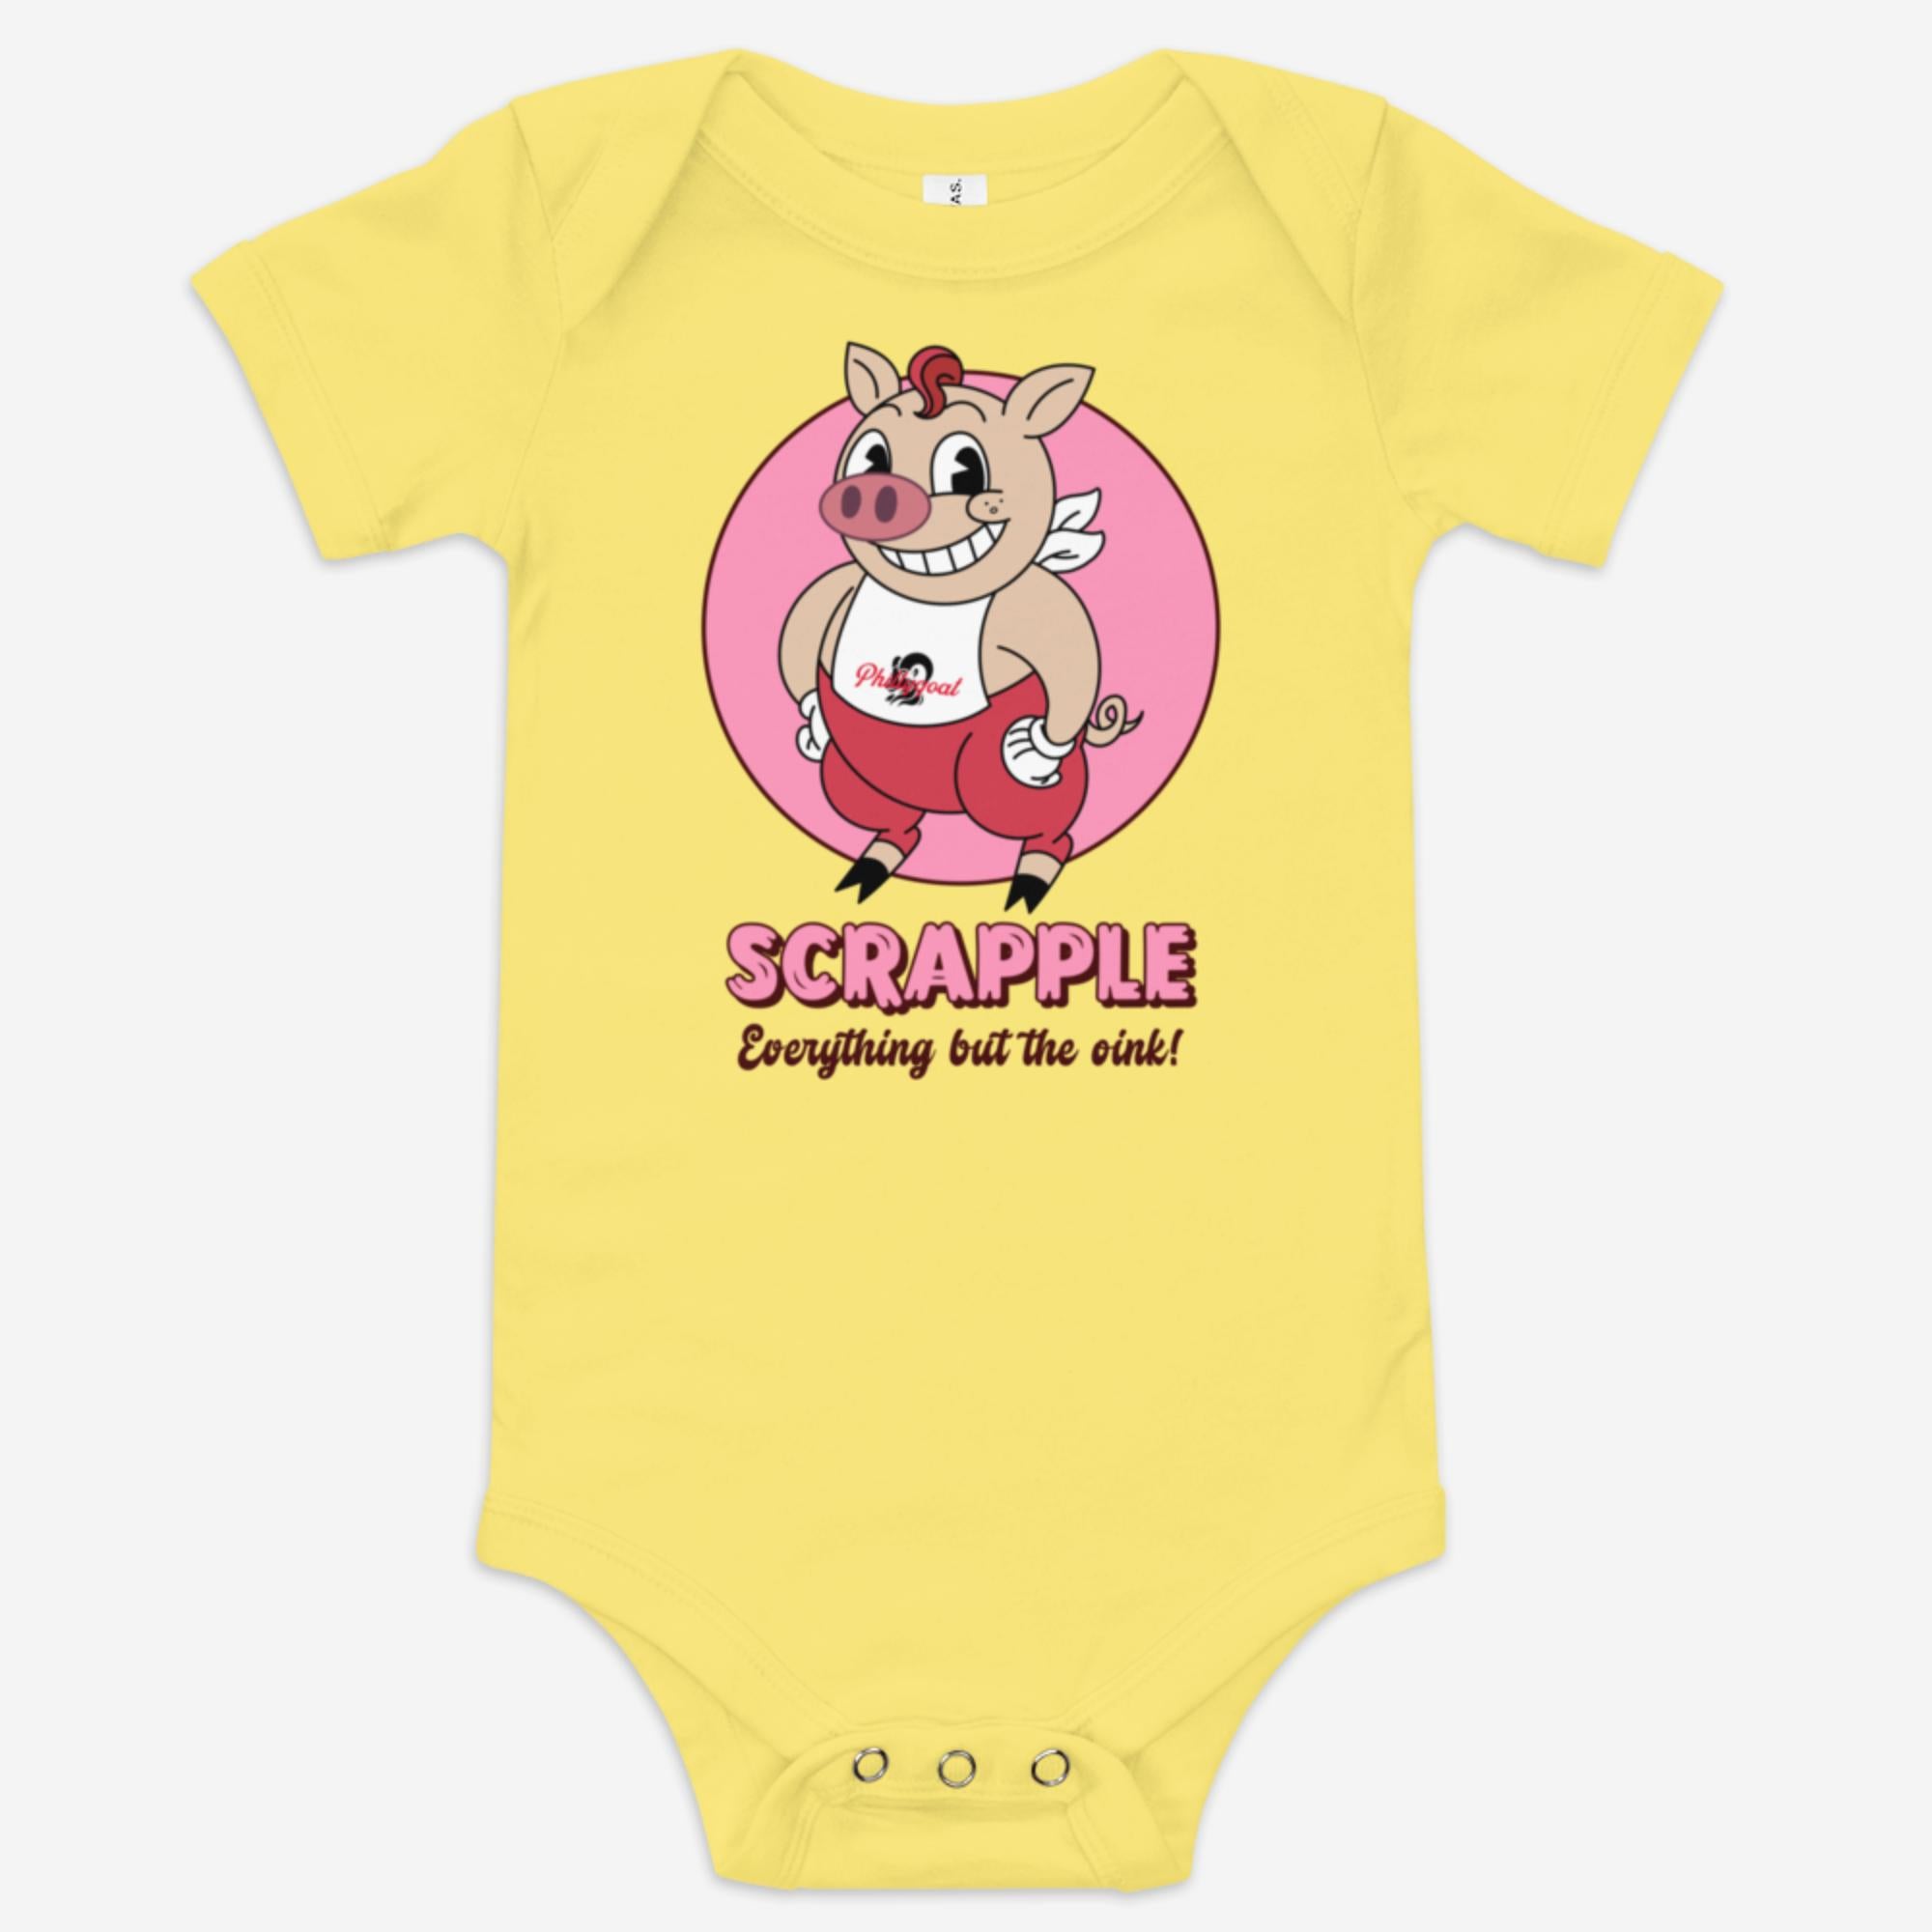 "Scrapple" Baby Onesie